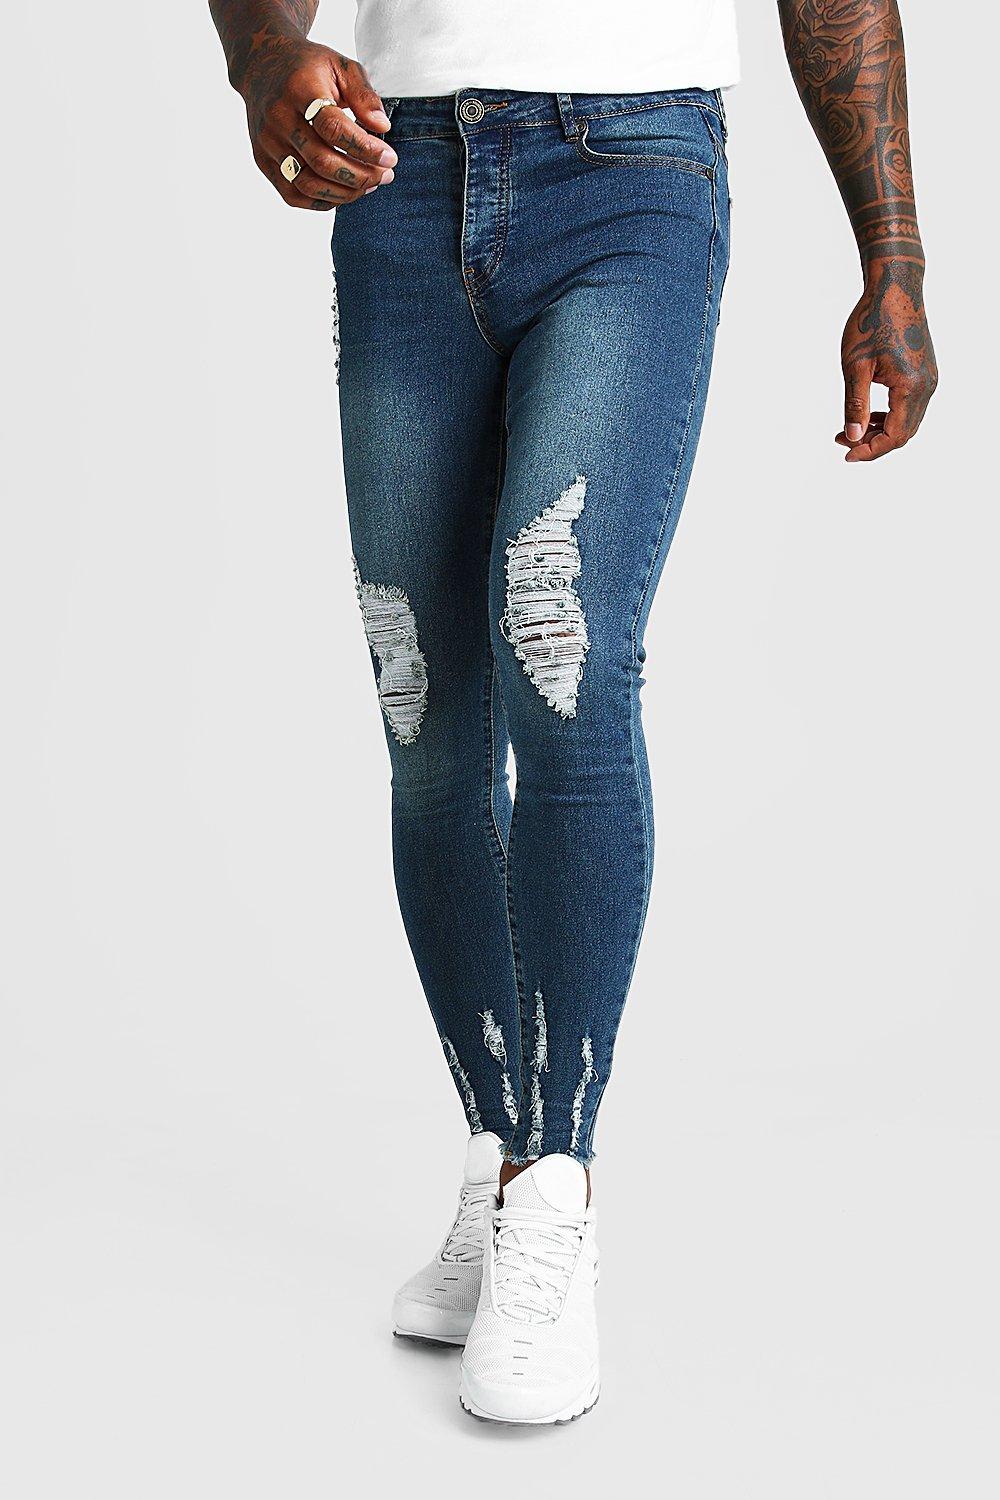 versace mens jeans sale